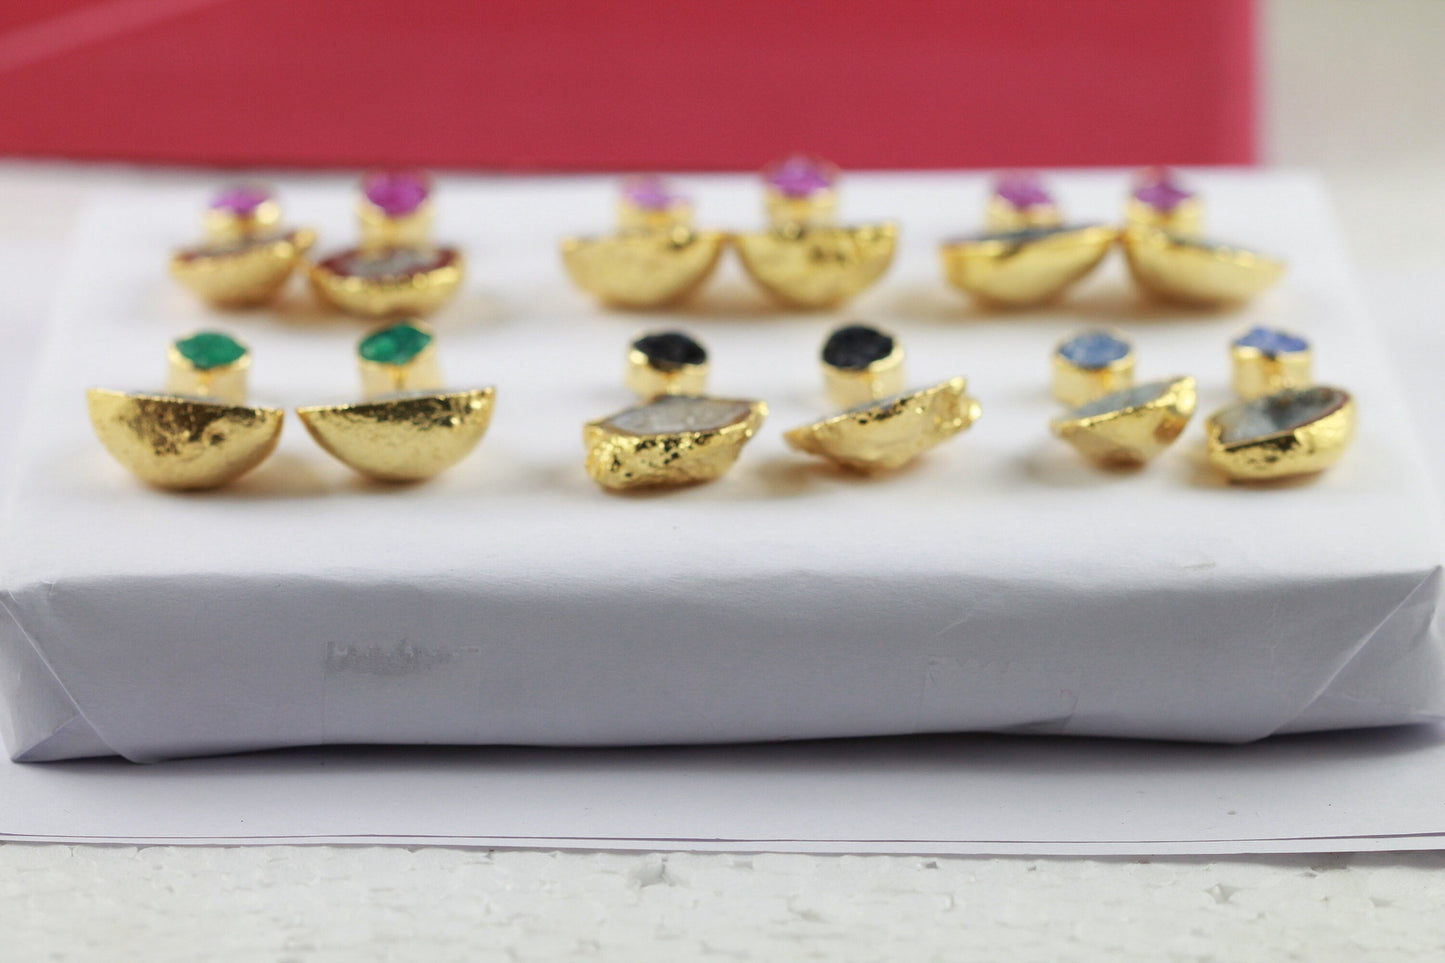 Earrings 45-60 mm , Natural Geode earrings, Druzy Earrings, Rock, Gold Gemstone - Meena Design